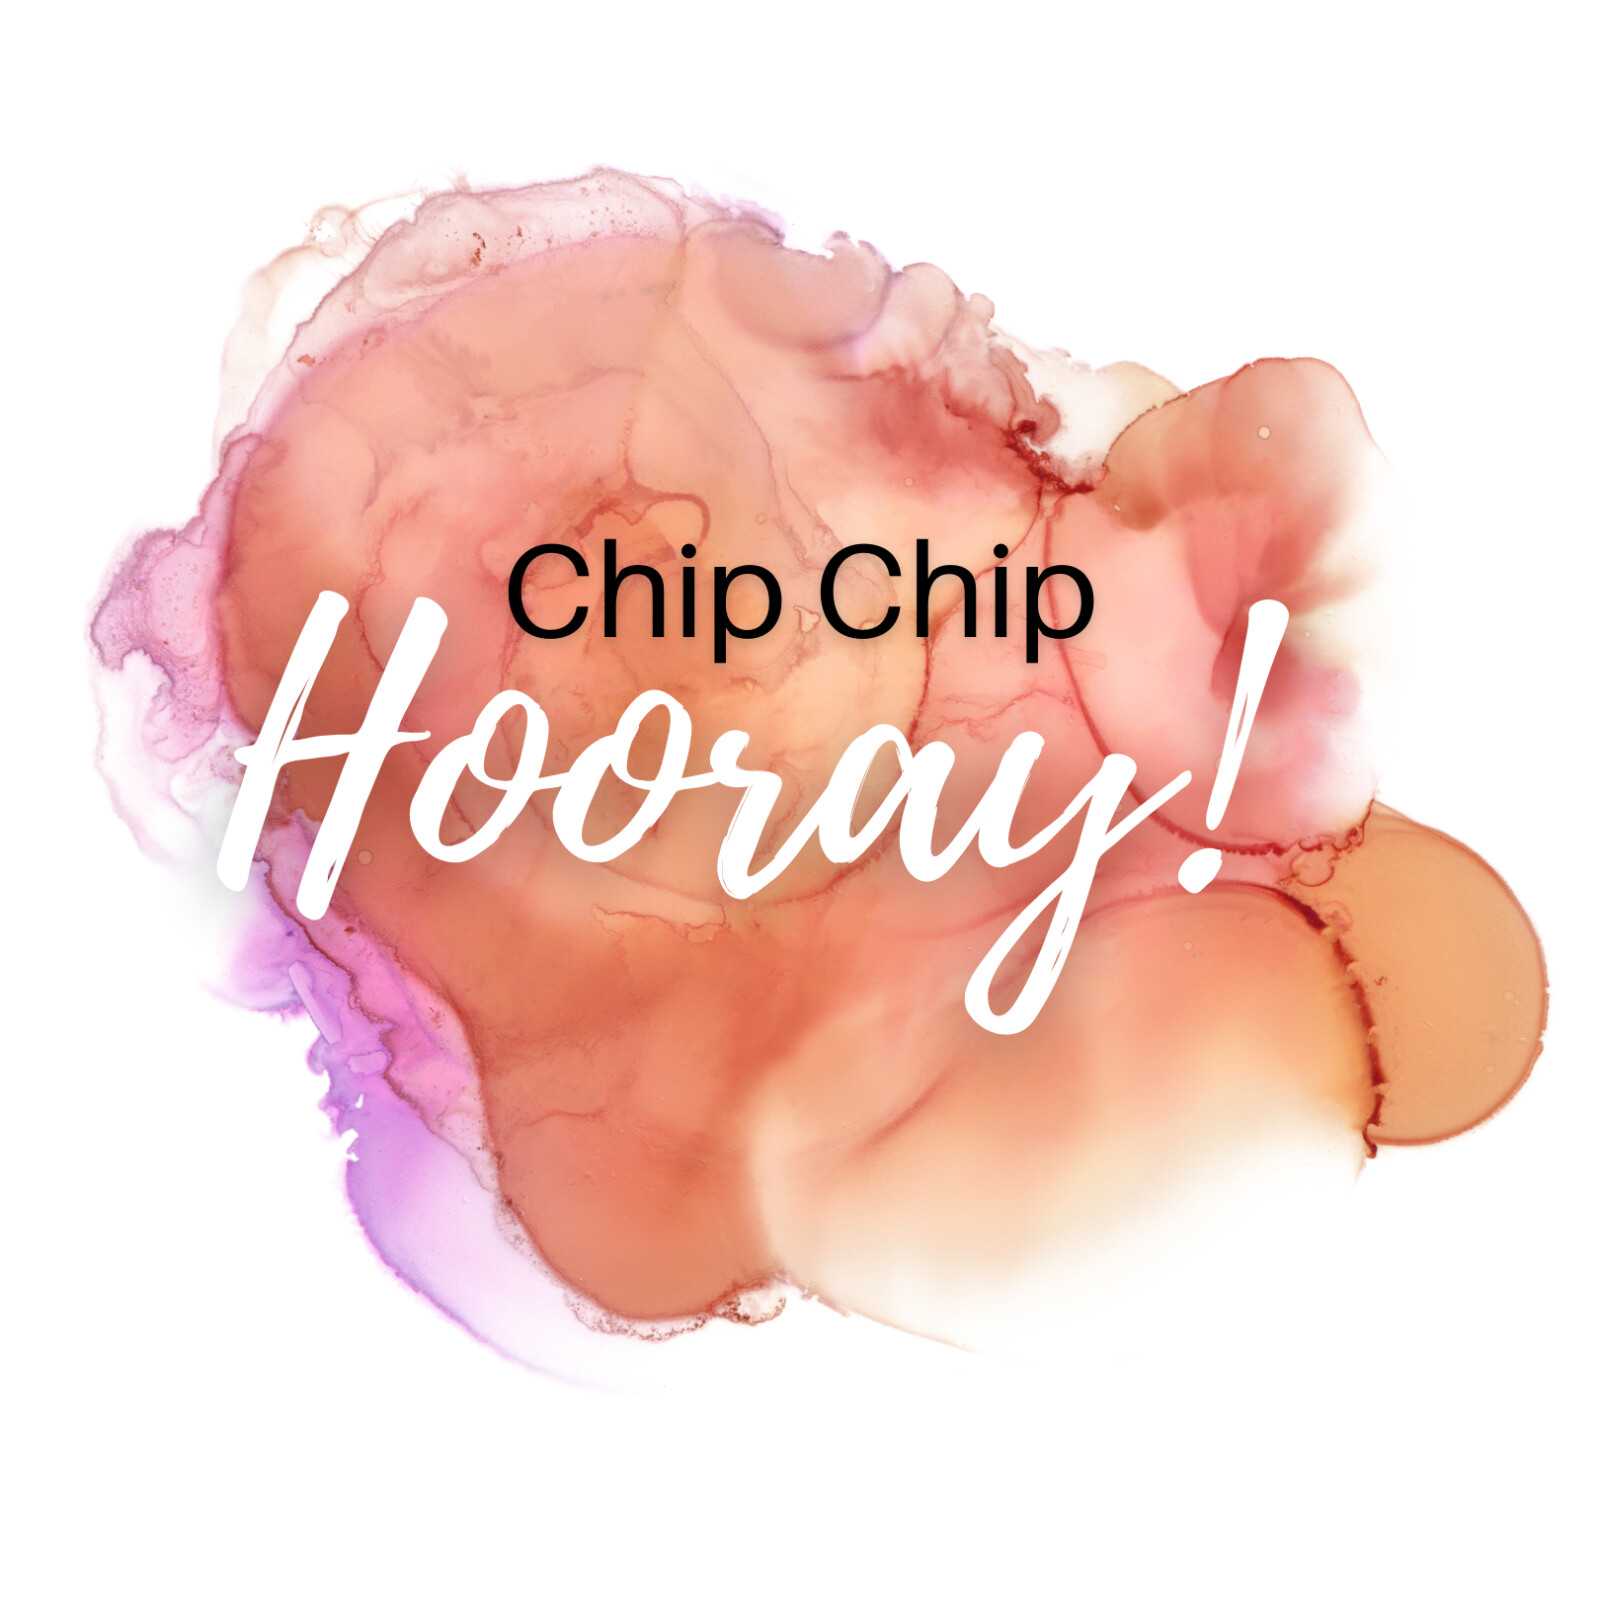 Chip Chip Hooray!